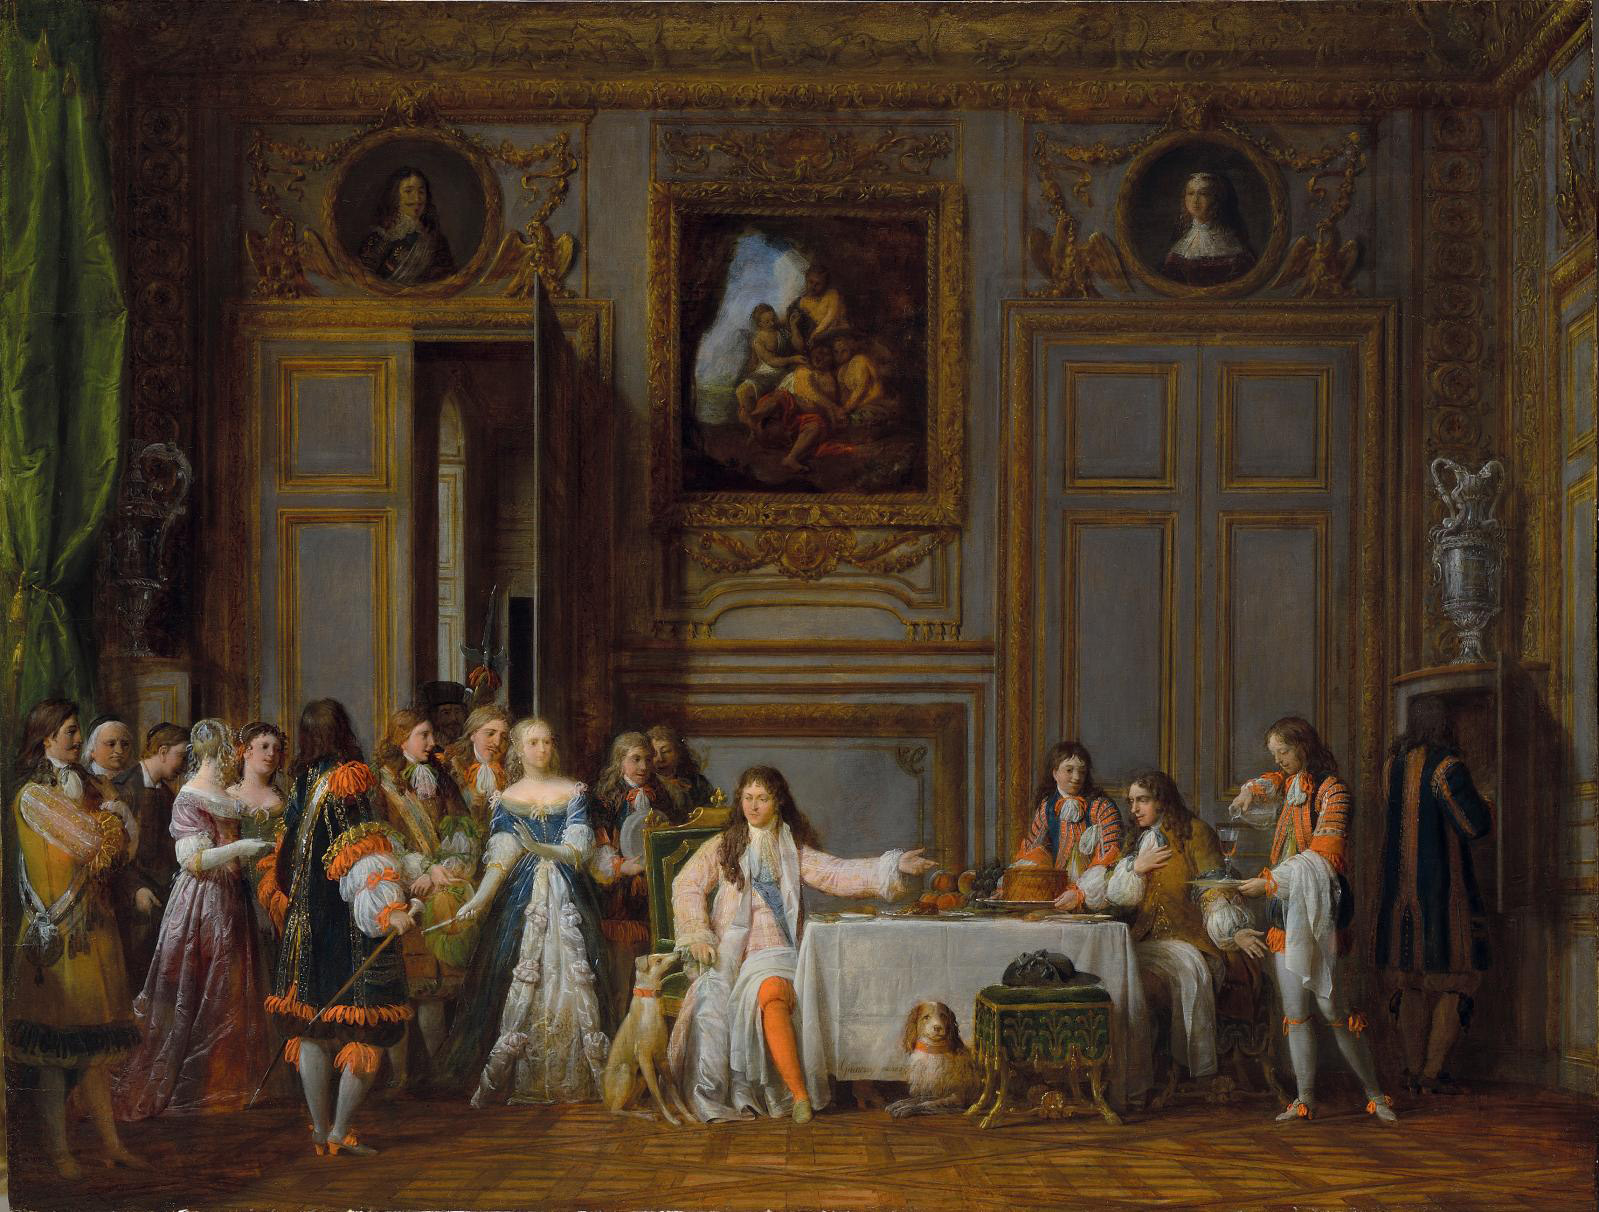 Molière, Preempted for the Comédie-Française